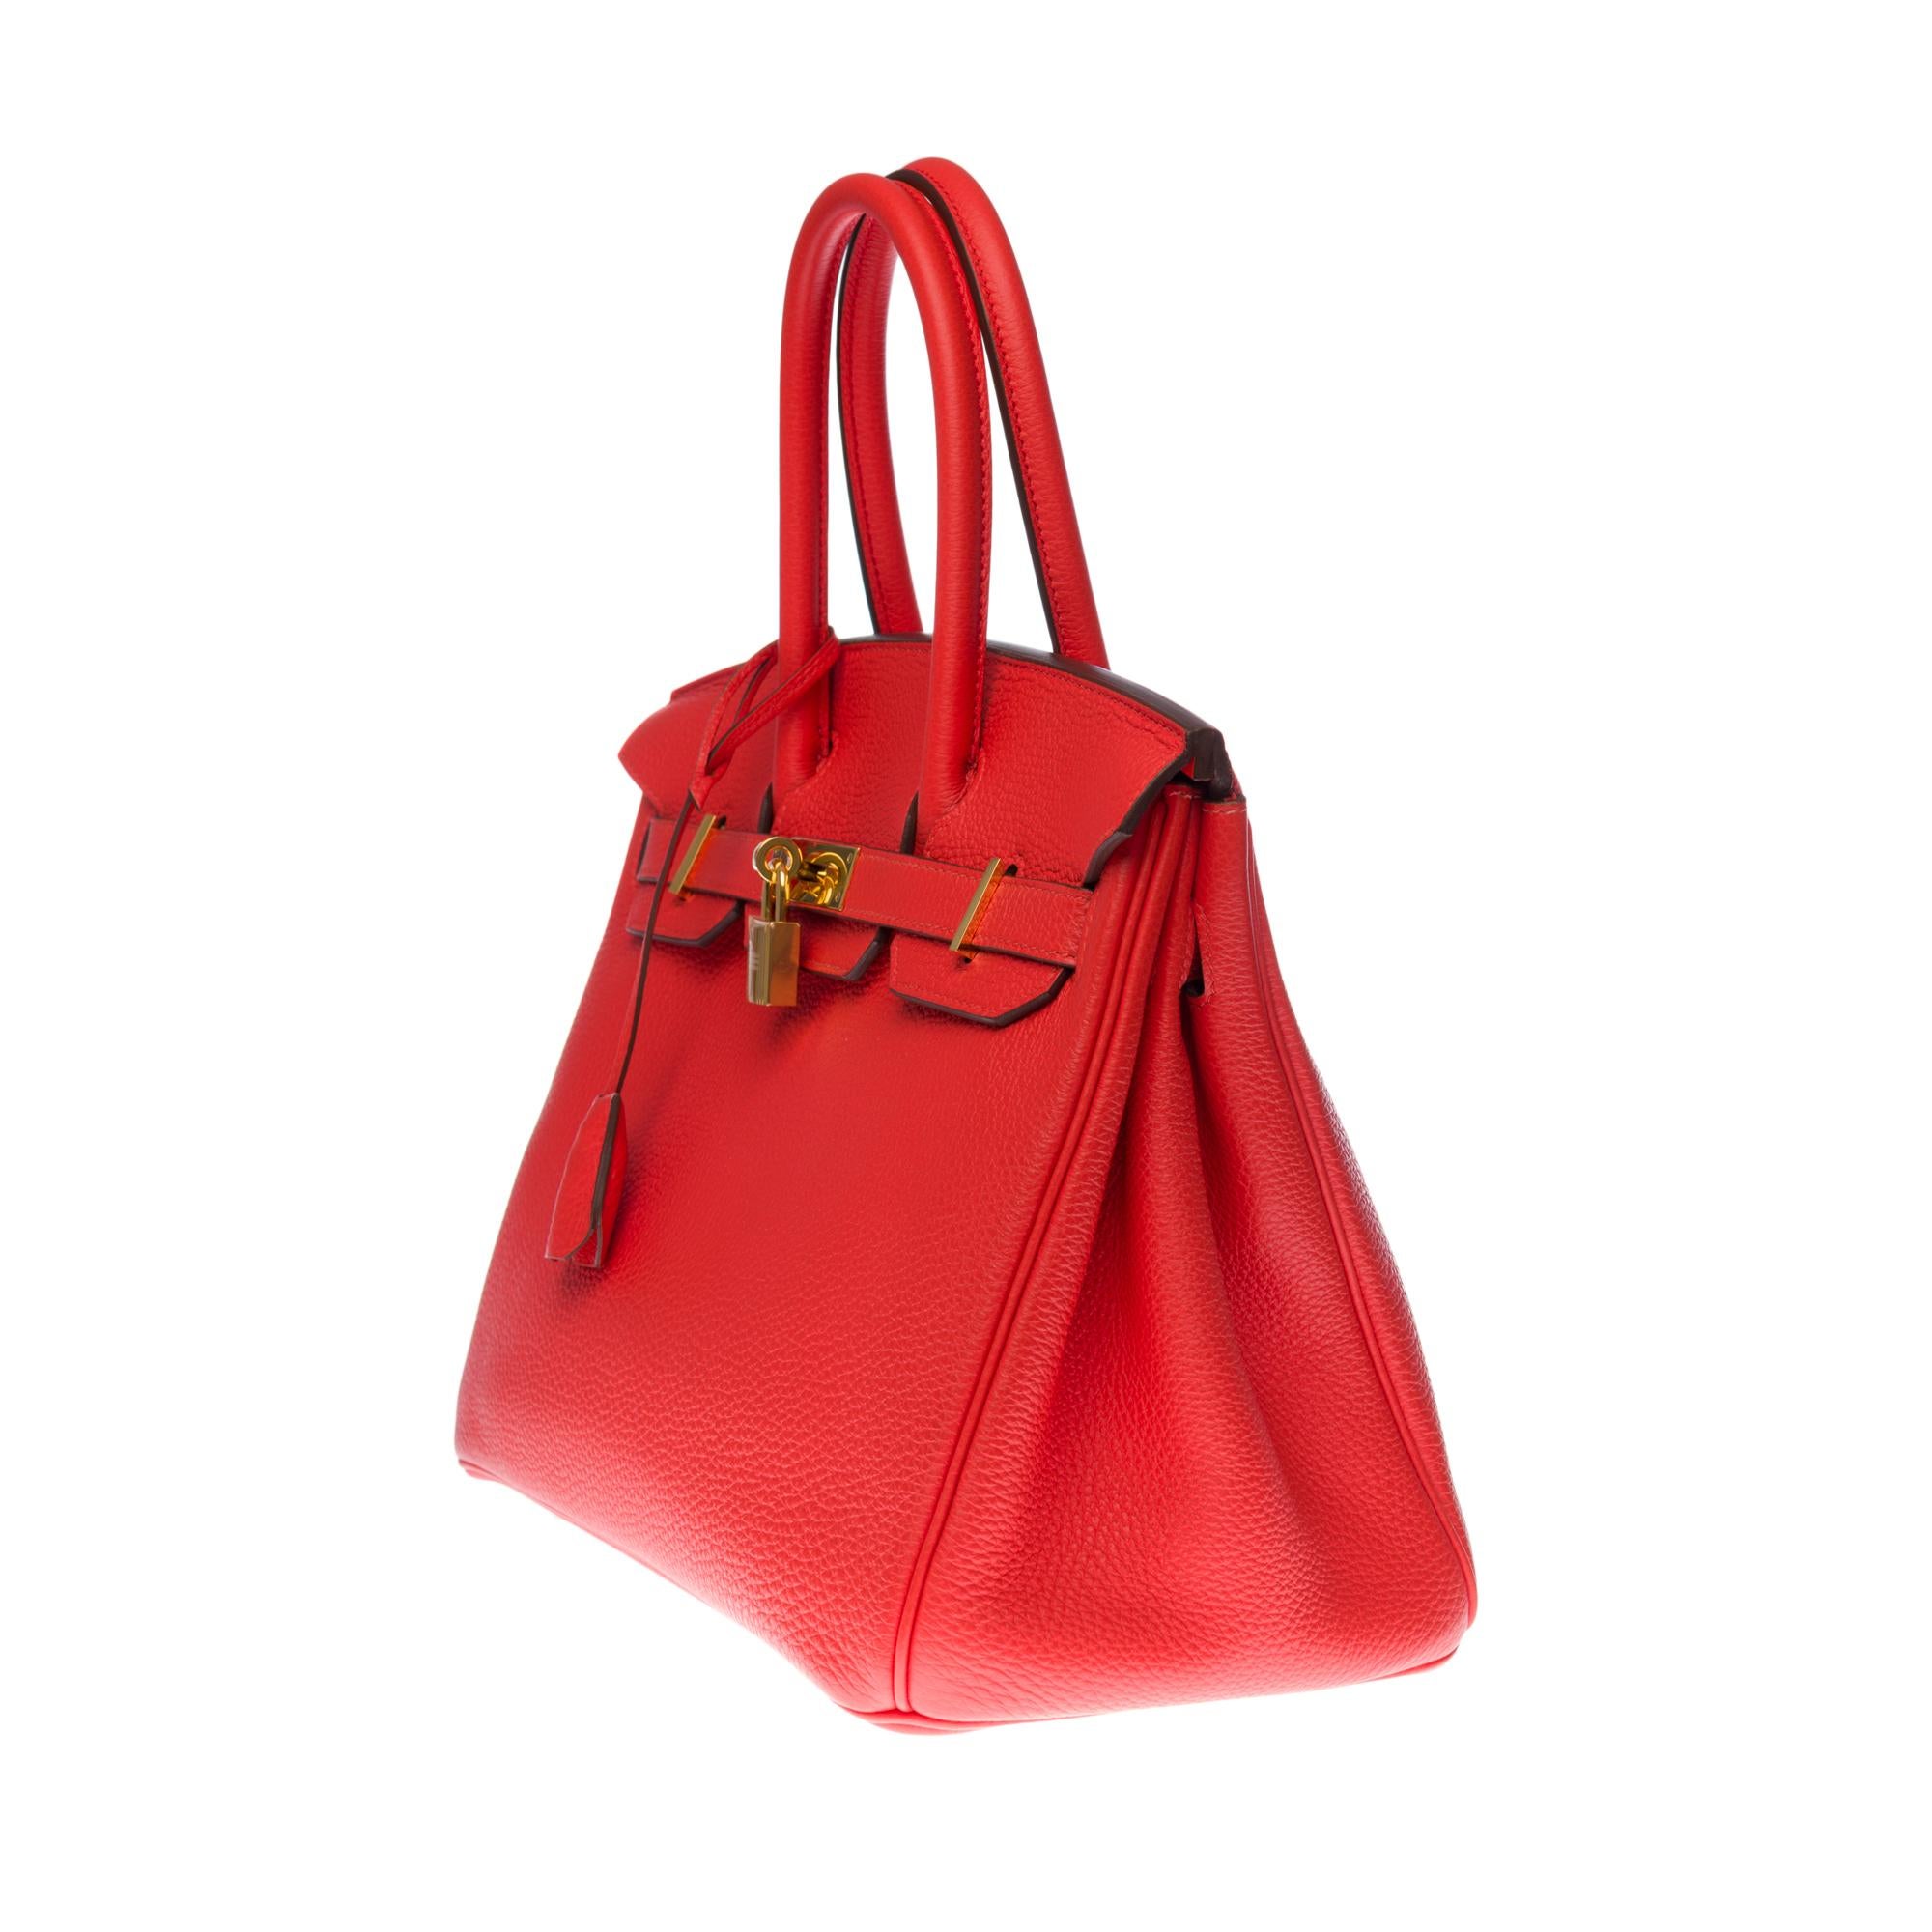 Red Stunning Hermès Birkin 30 handbag in Rouge Capucine Togo leather, GHW